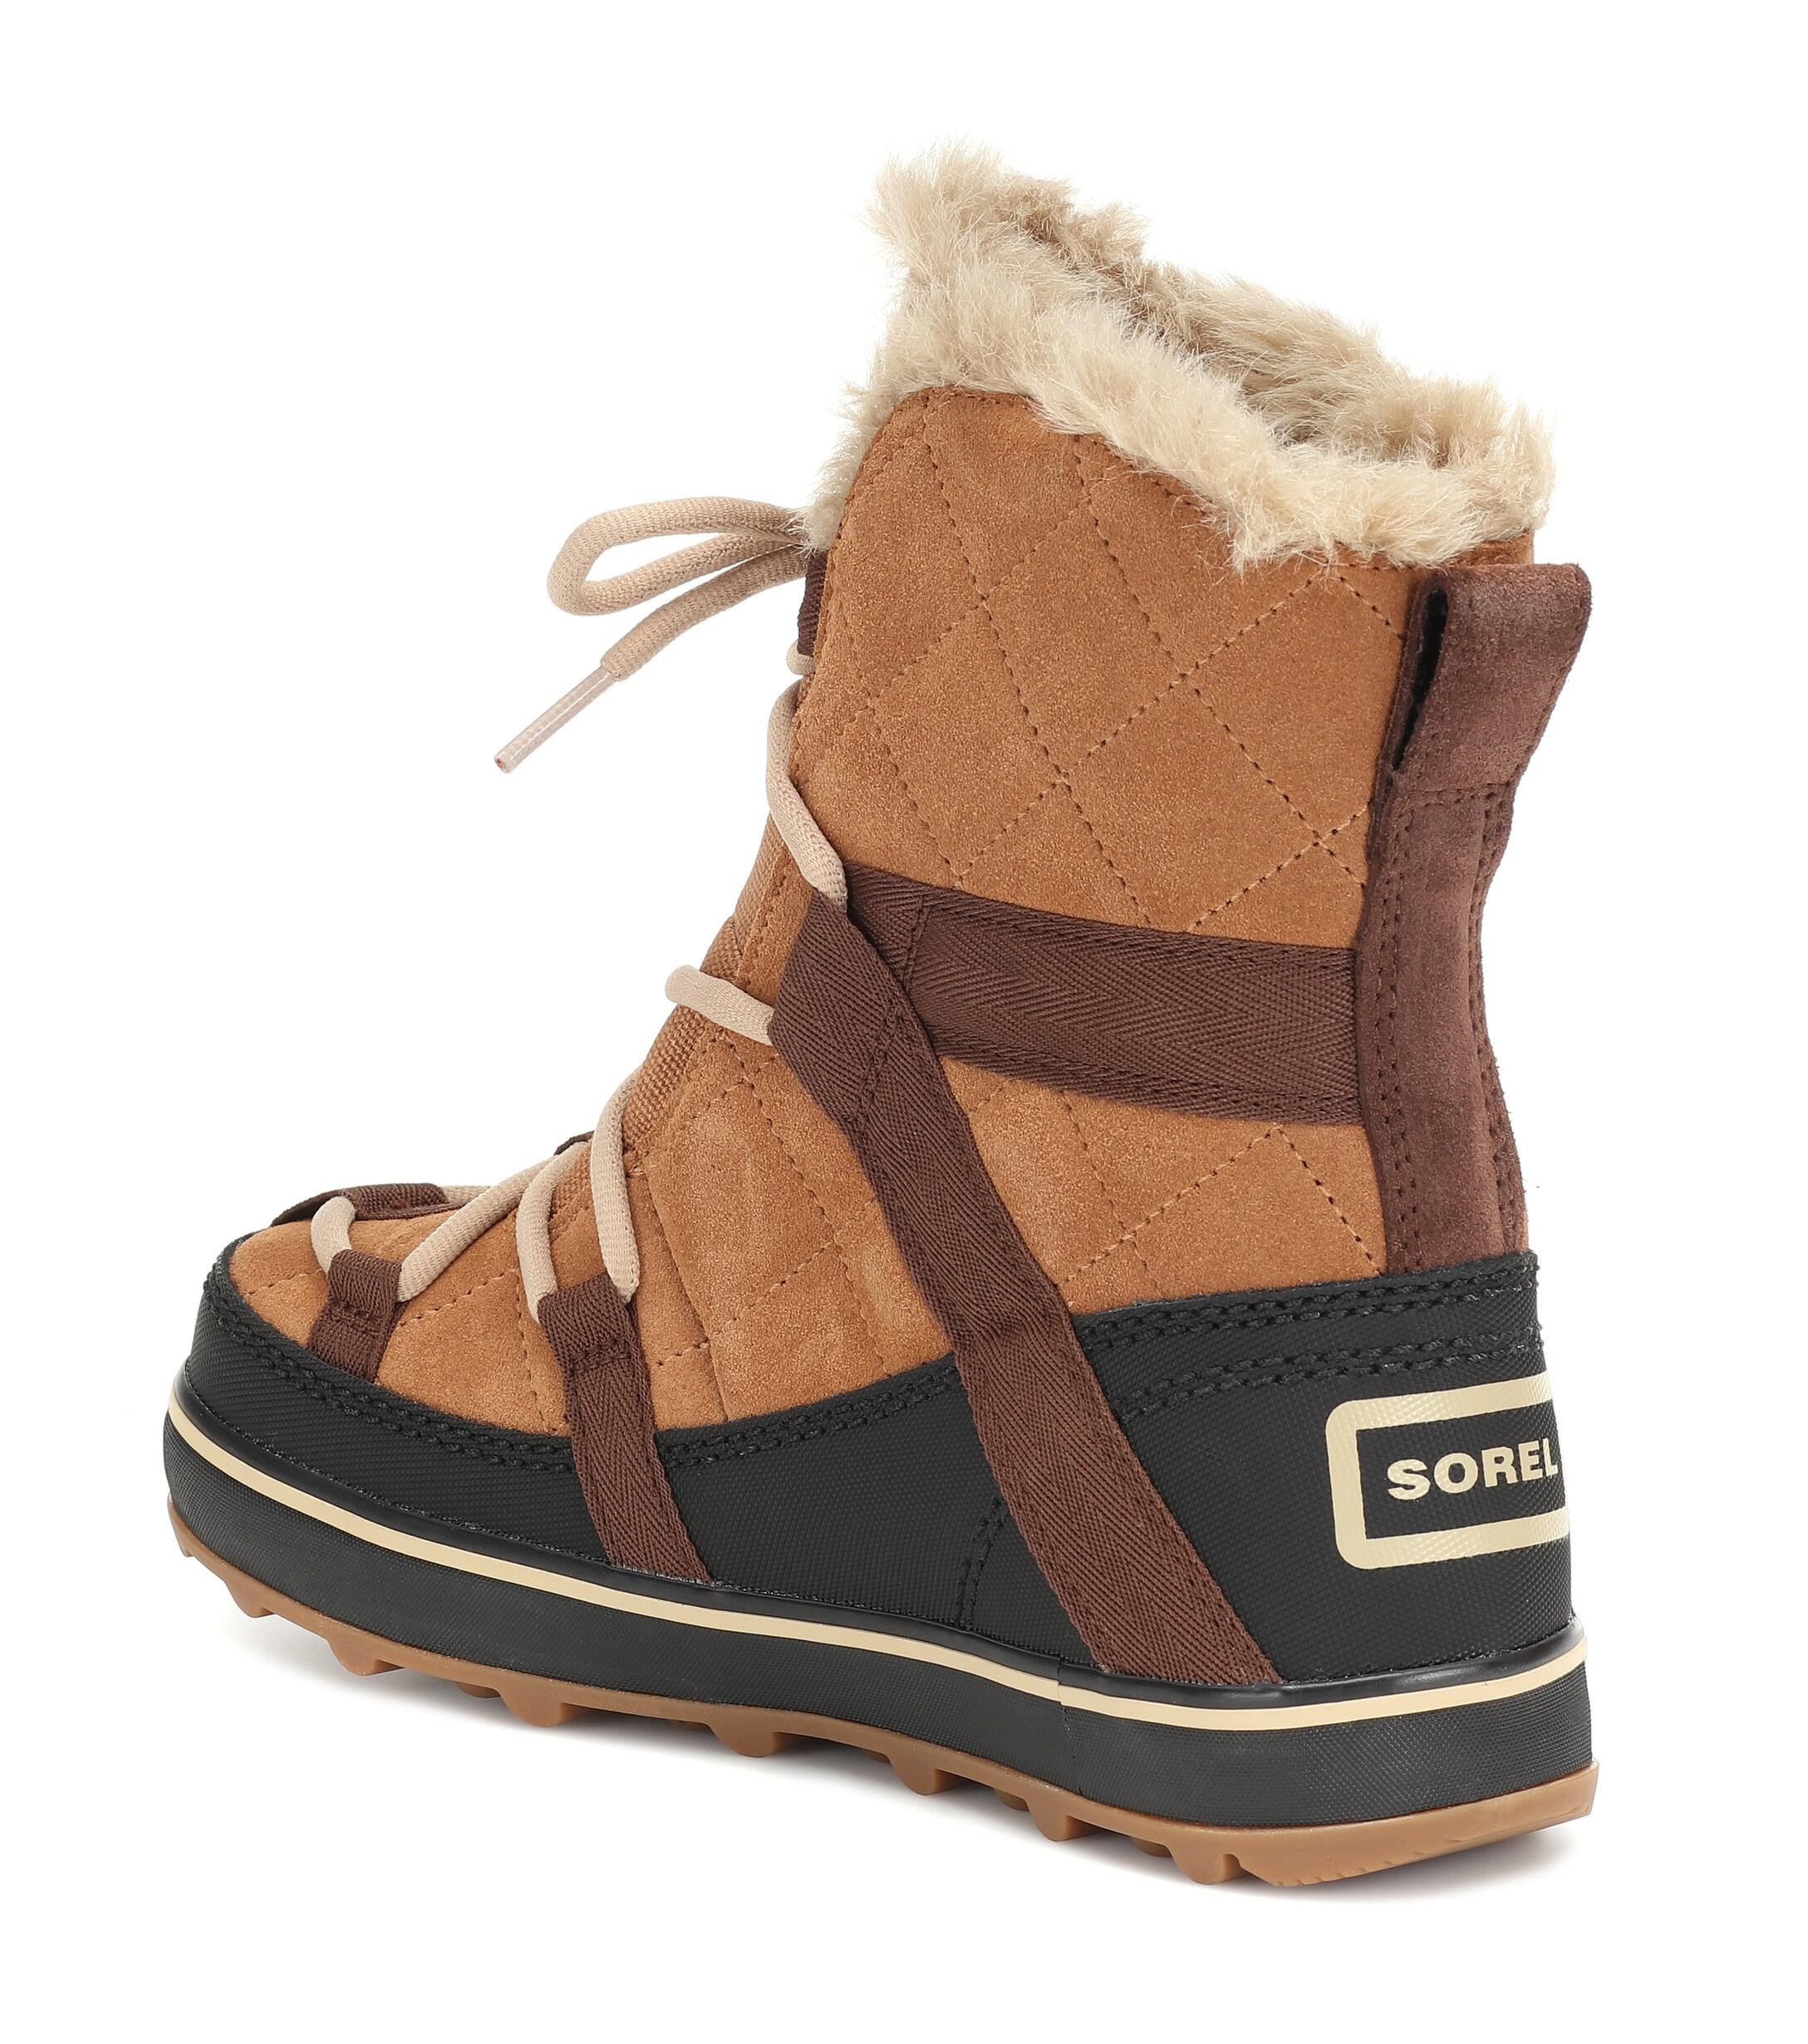 Sorel Explorer Suede Boots in Brown - Lyst